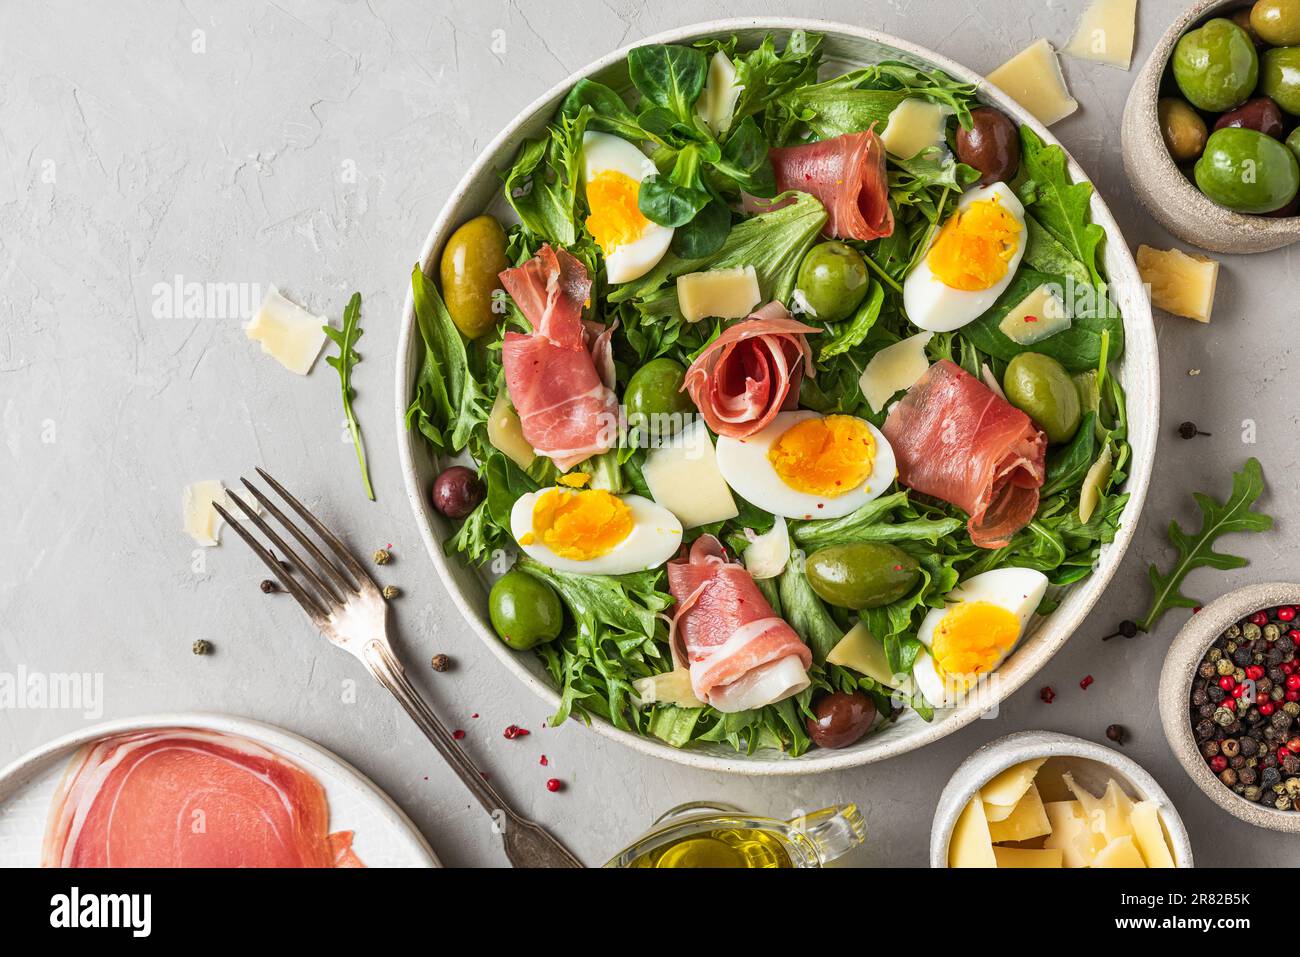 Insalata di prosciutto con parmigiano, olive, uova e rucola in un piatto su fondo grigio. Cucina italiana. vista dall'alto Foto Stock